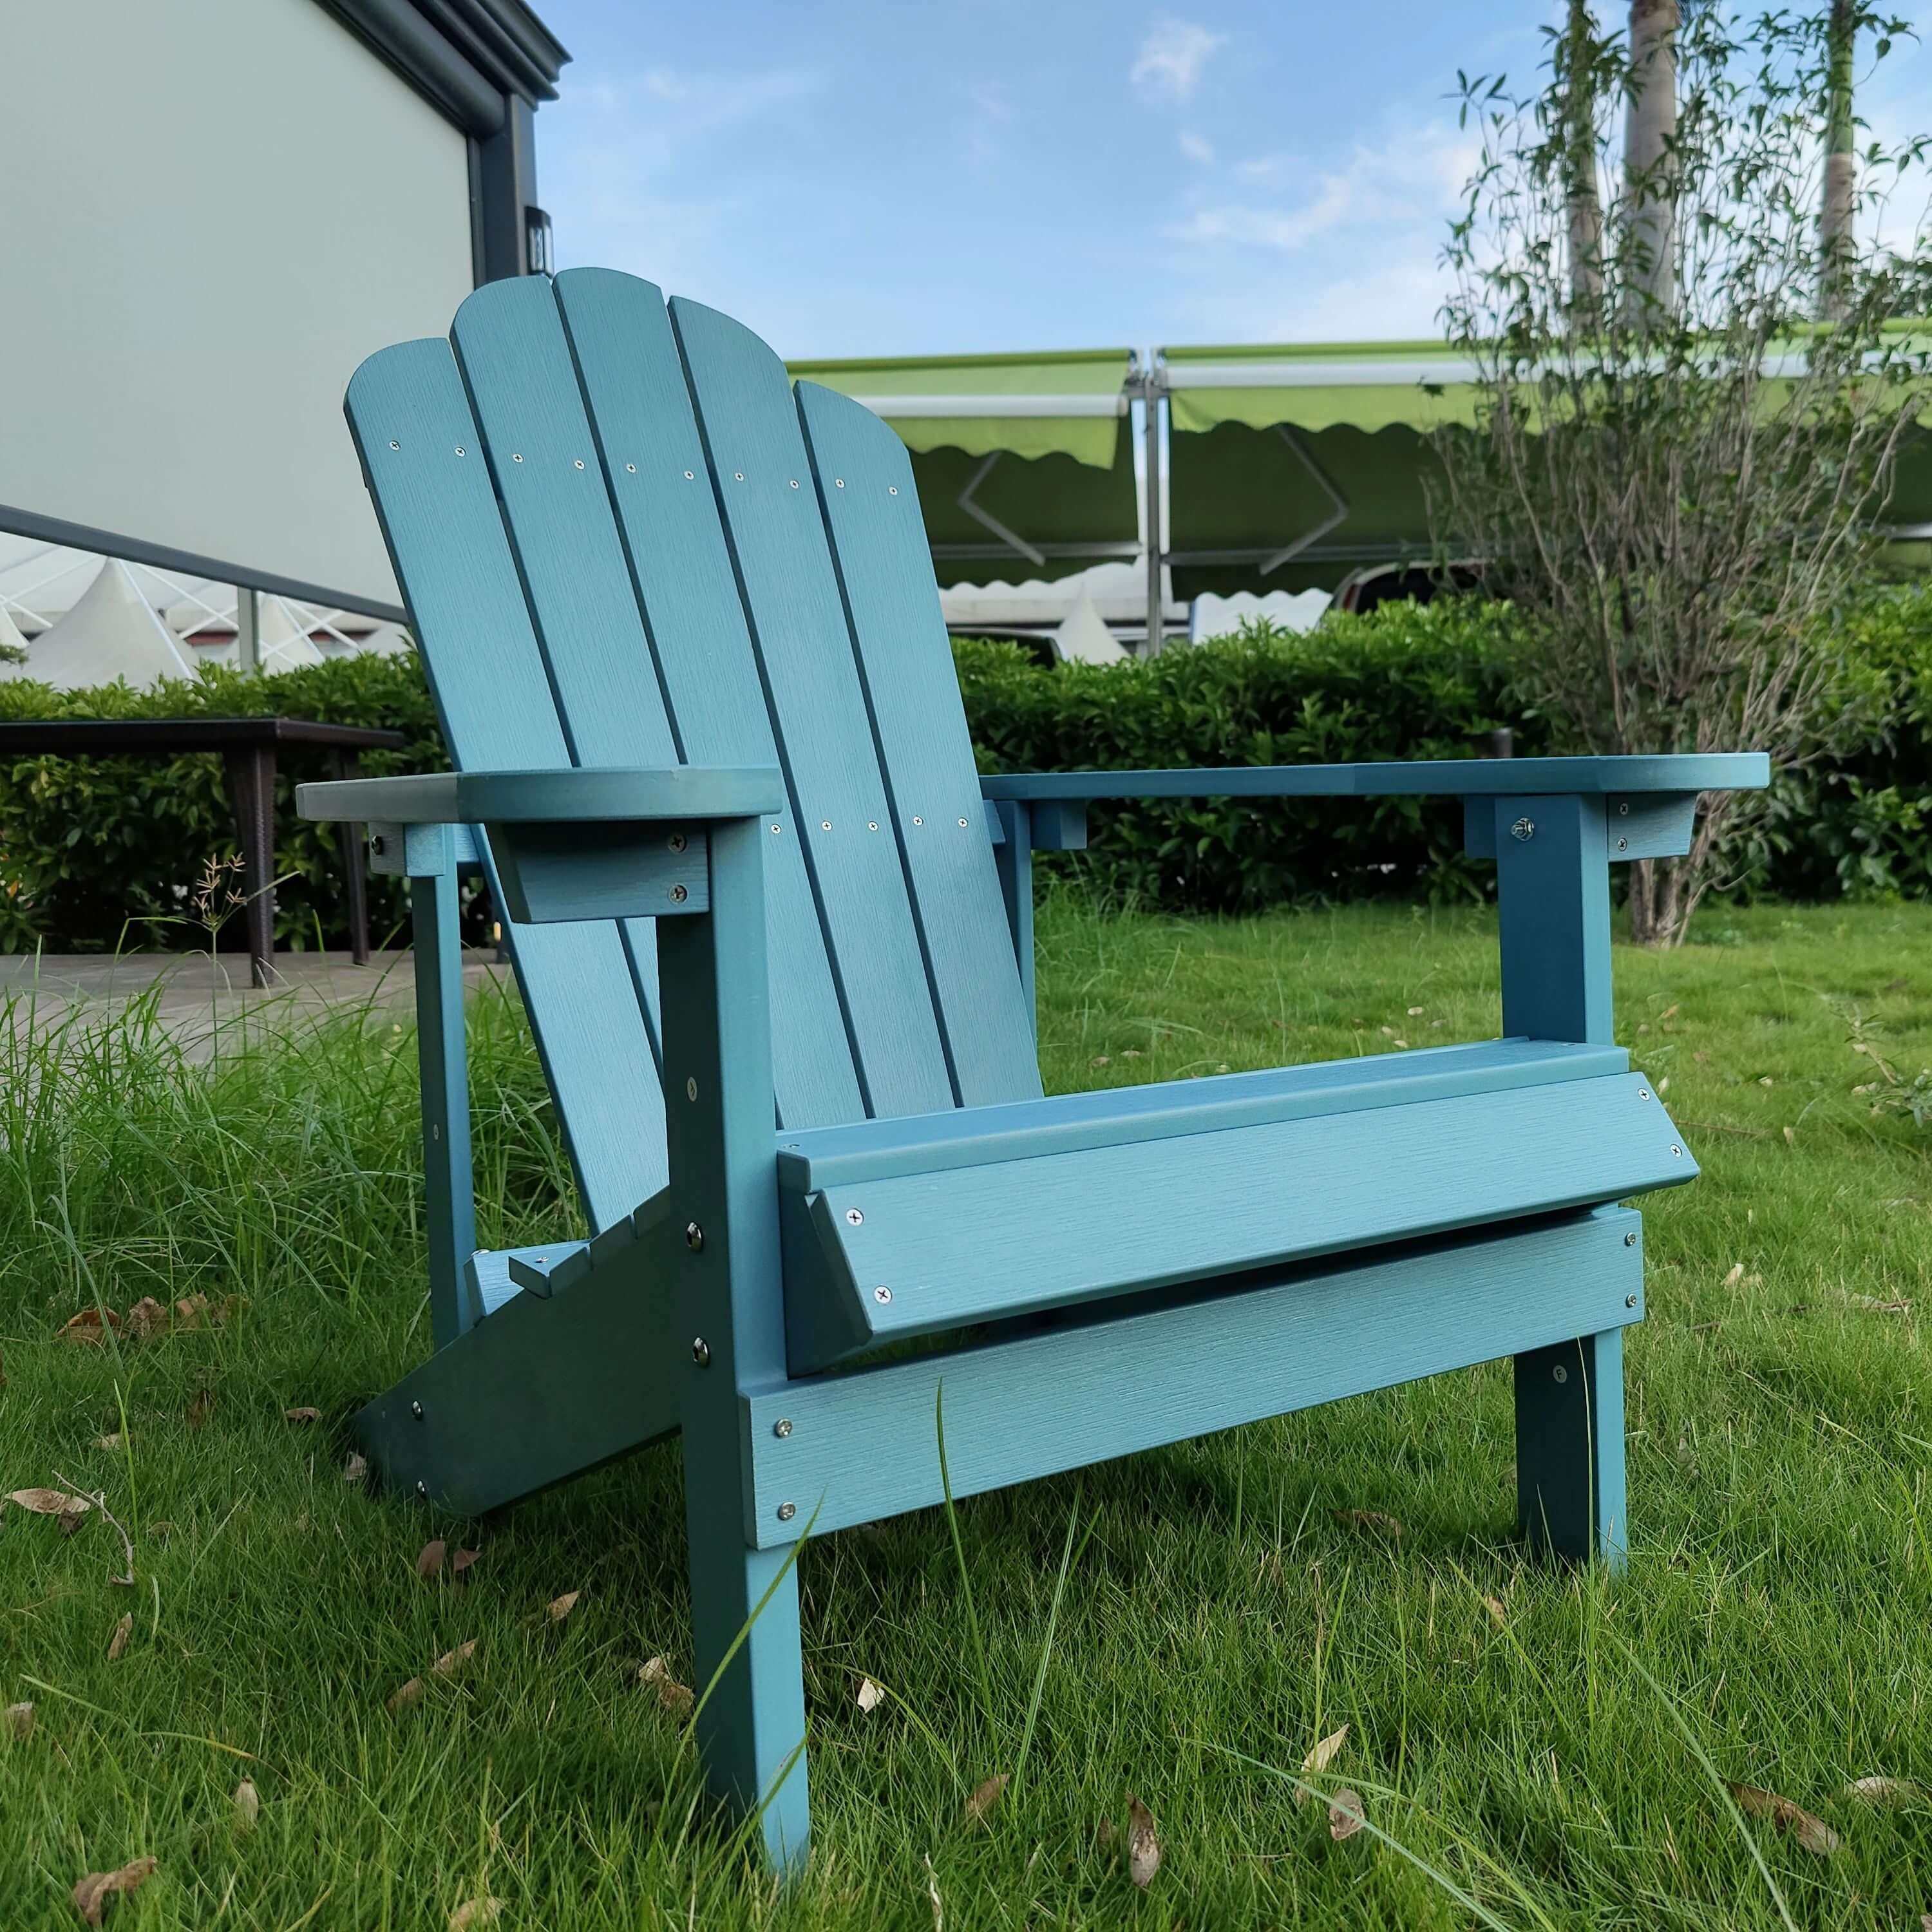 Diseño impermeable al aire libre jardín Patio playa salón plegable clásico plástico duro poli/madera Muskoka Adirondack silla muebles